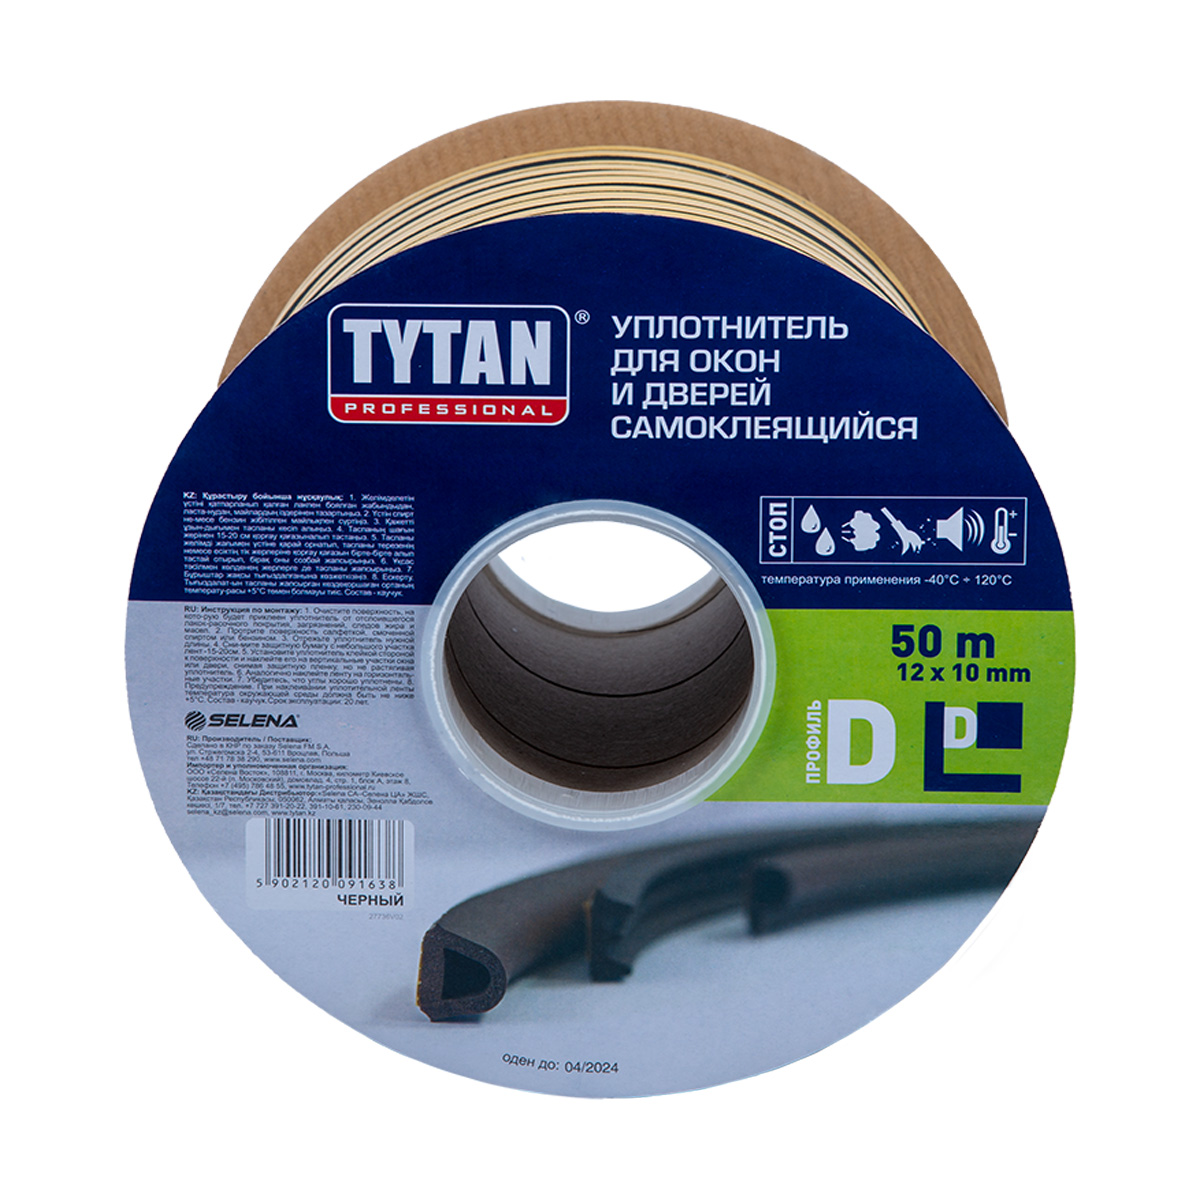 Уплотнитель промышленный Tytan Professional, D-профиль 12 x 10 мм, бухта 50 м, черный